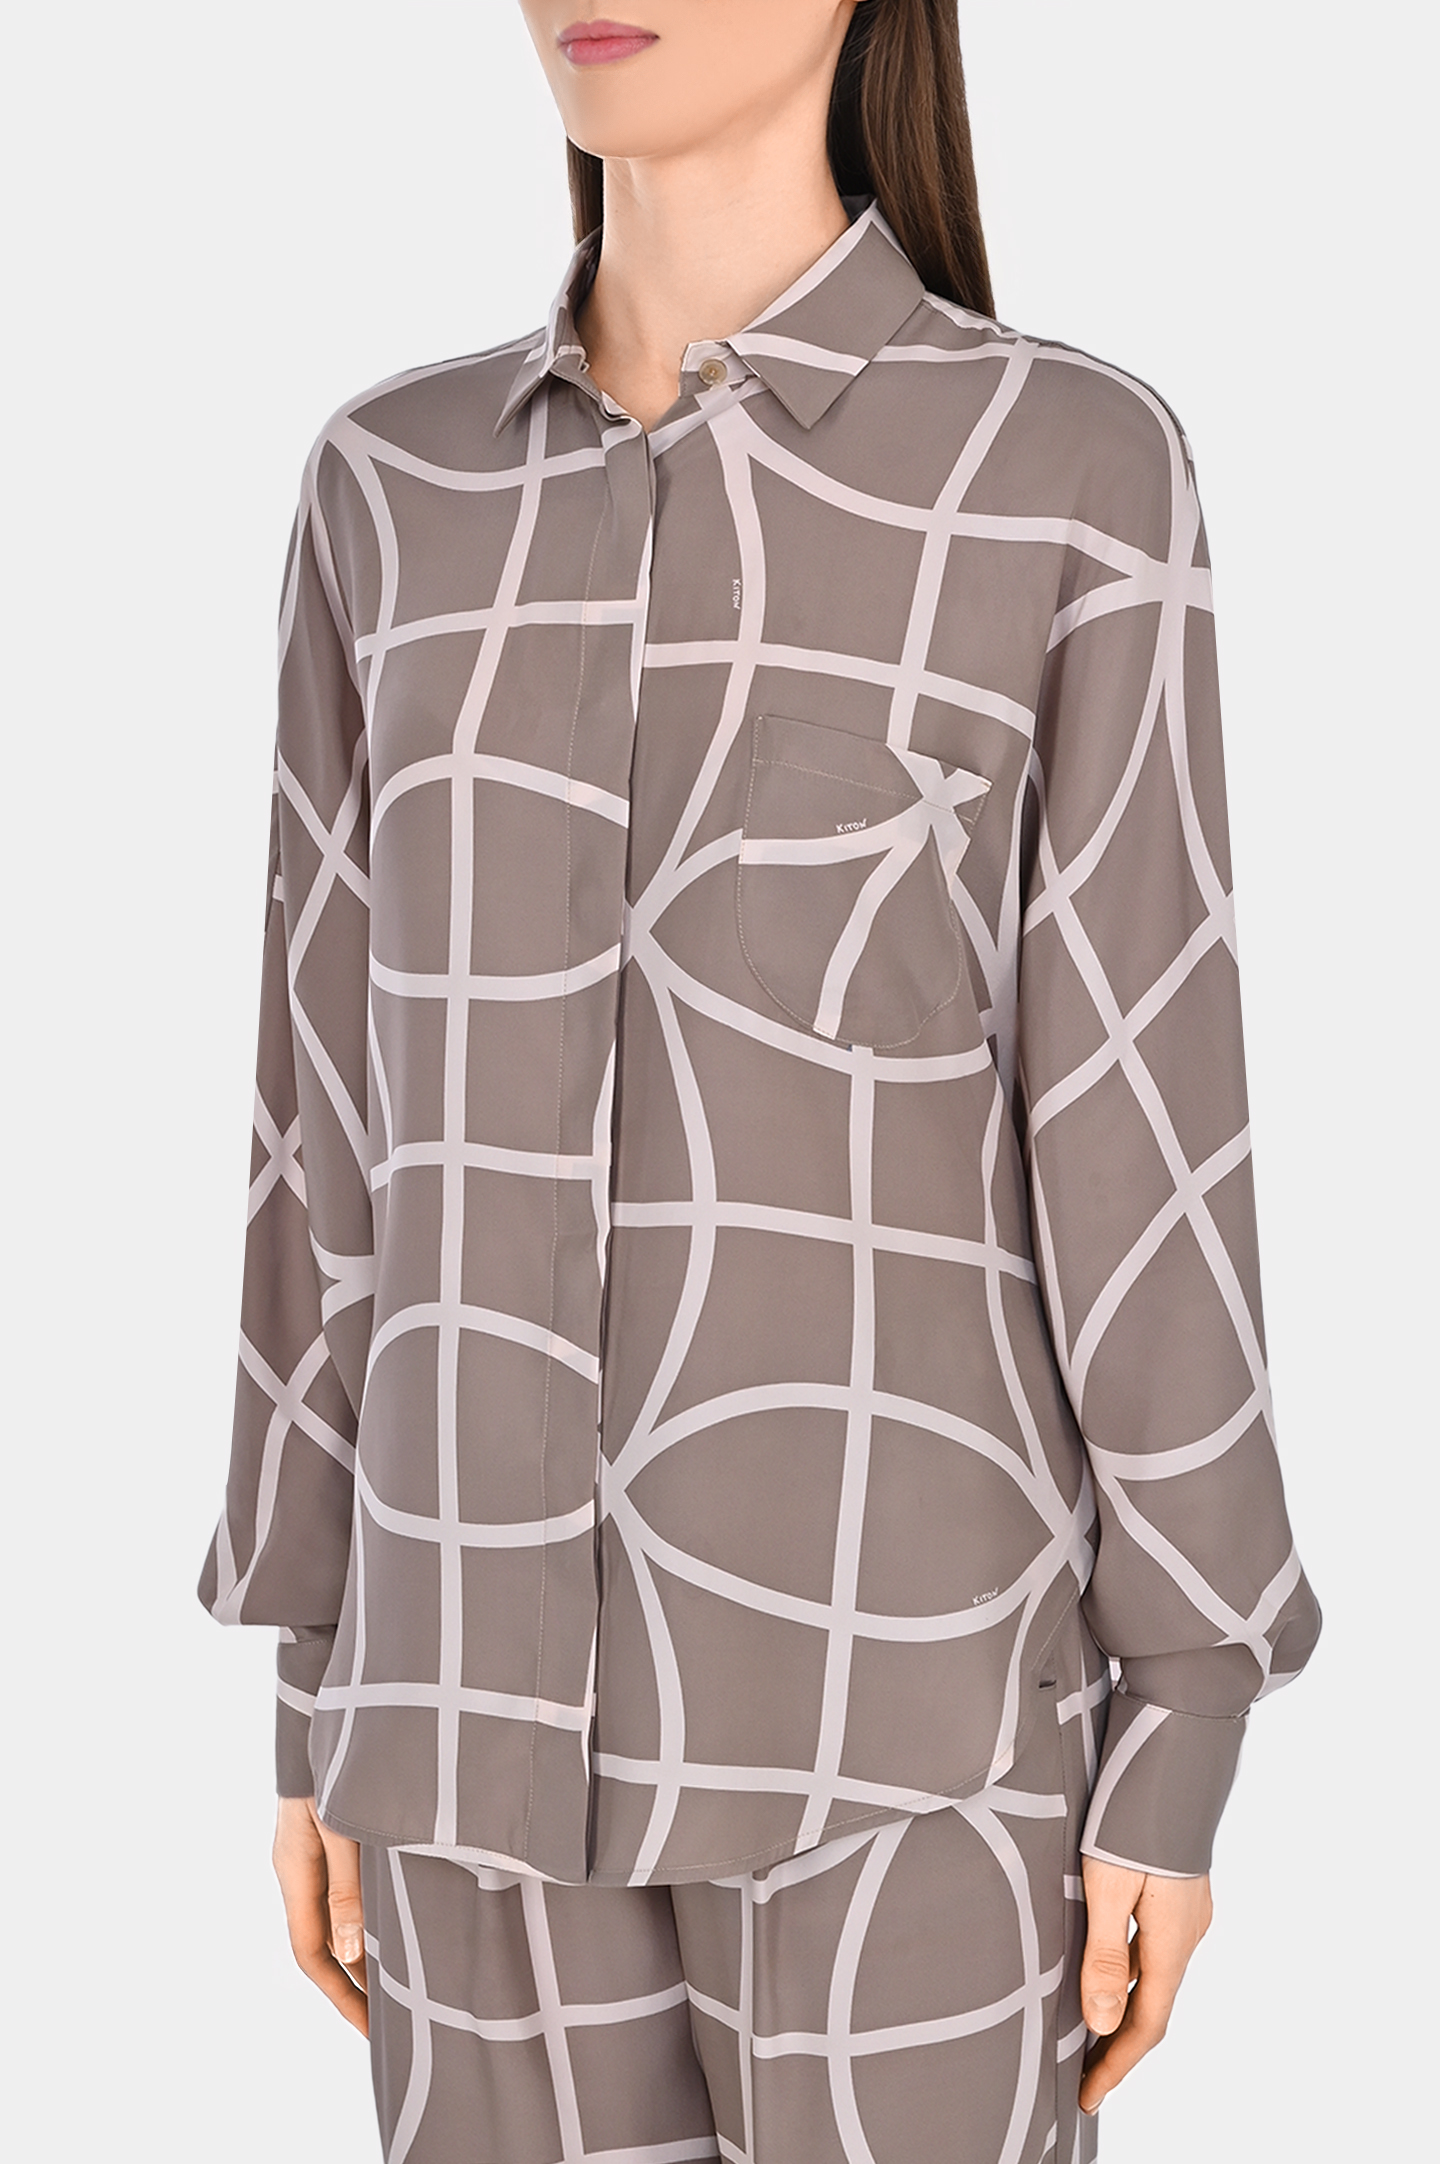 Шелковая блуза с принтом KITON D57405K0979C0, цвет: Бежевый, Женский